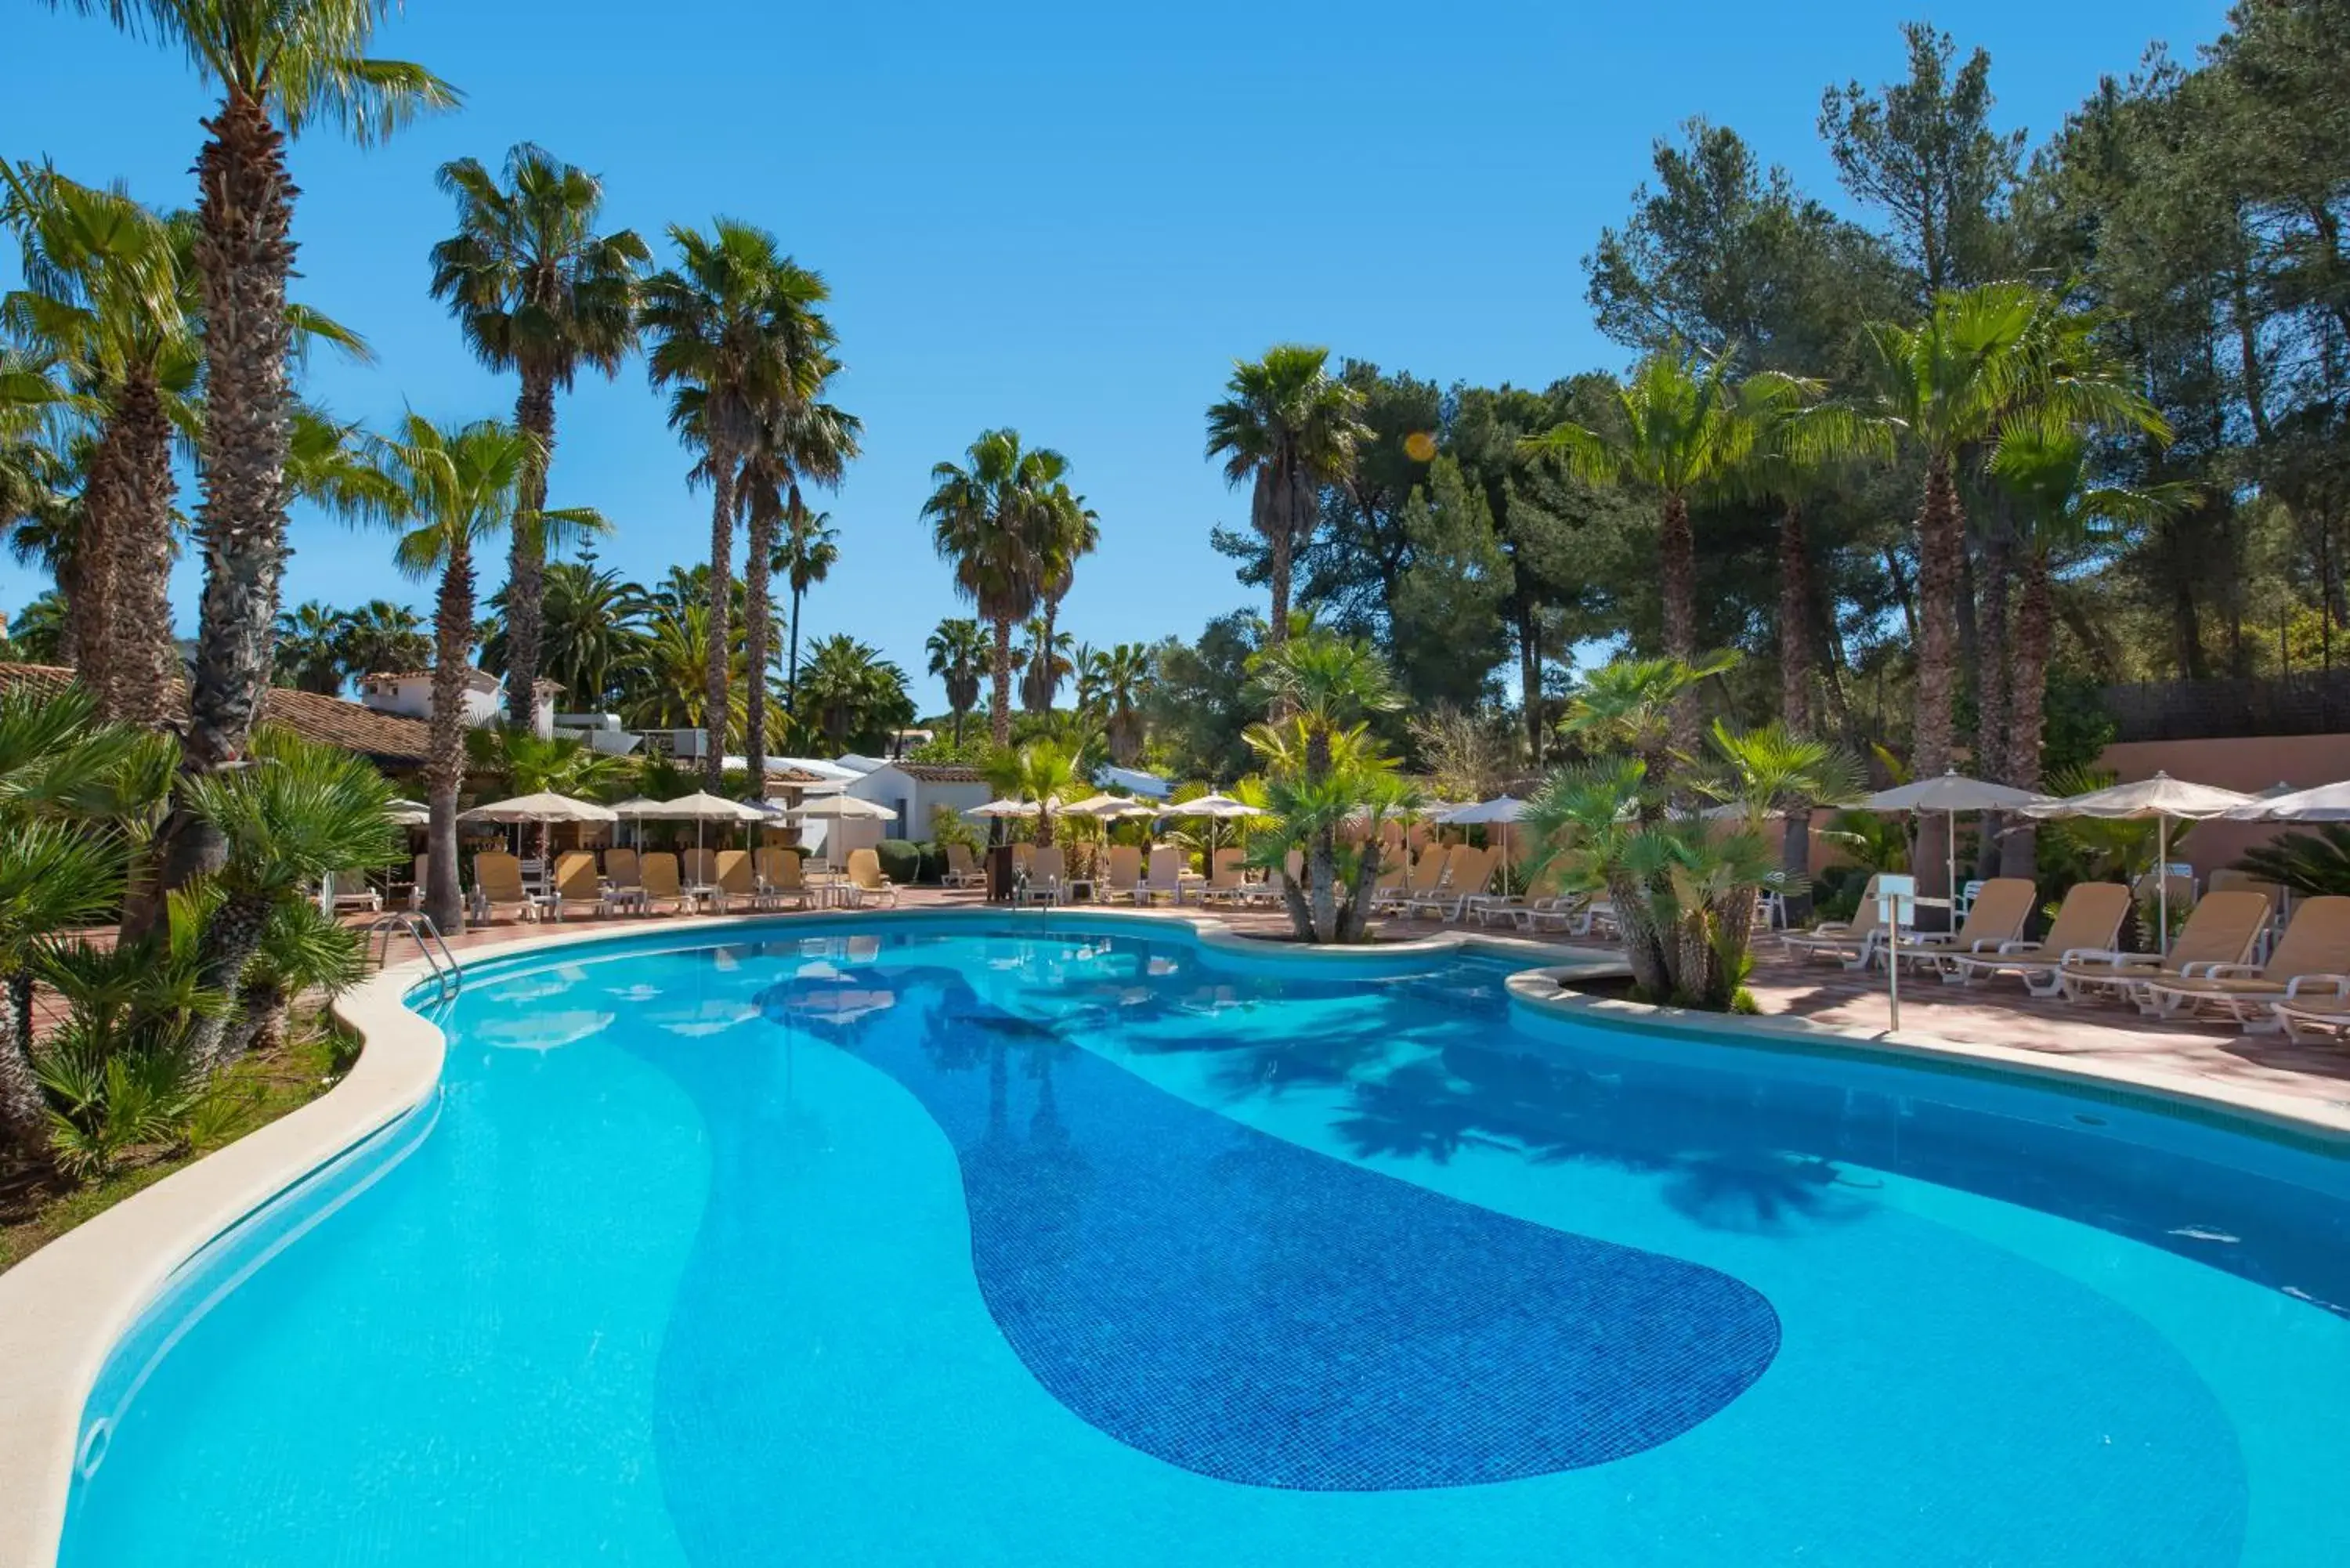 Swimming Pool in Hotel Cala Romantica Mallorca